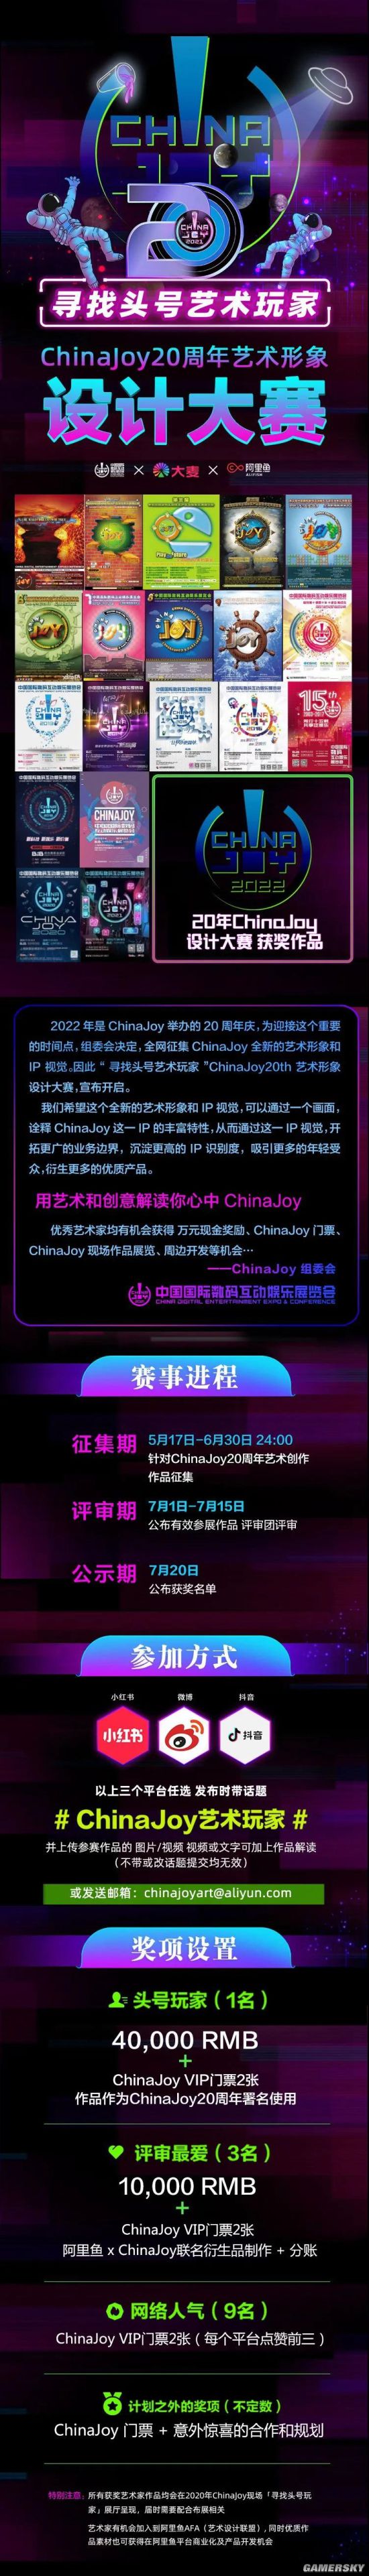 寻找头号艺术玩家ChinaJoy20周年艺术形象设计大赛开启！